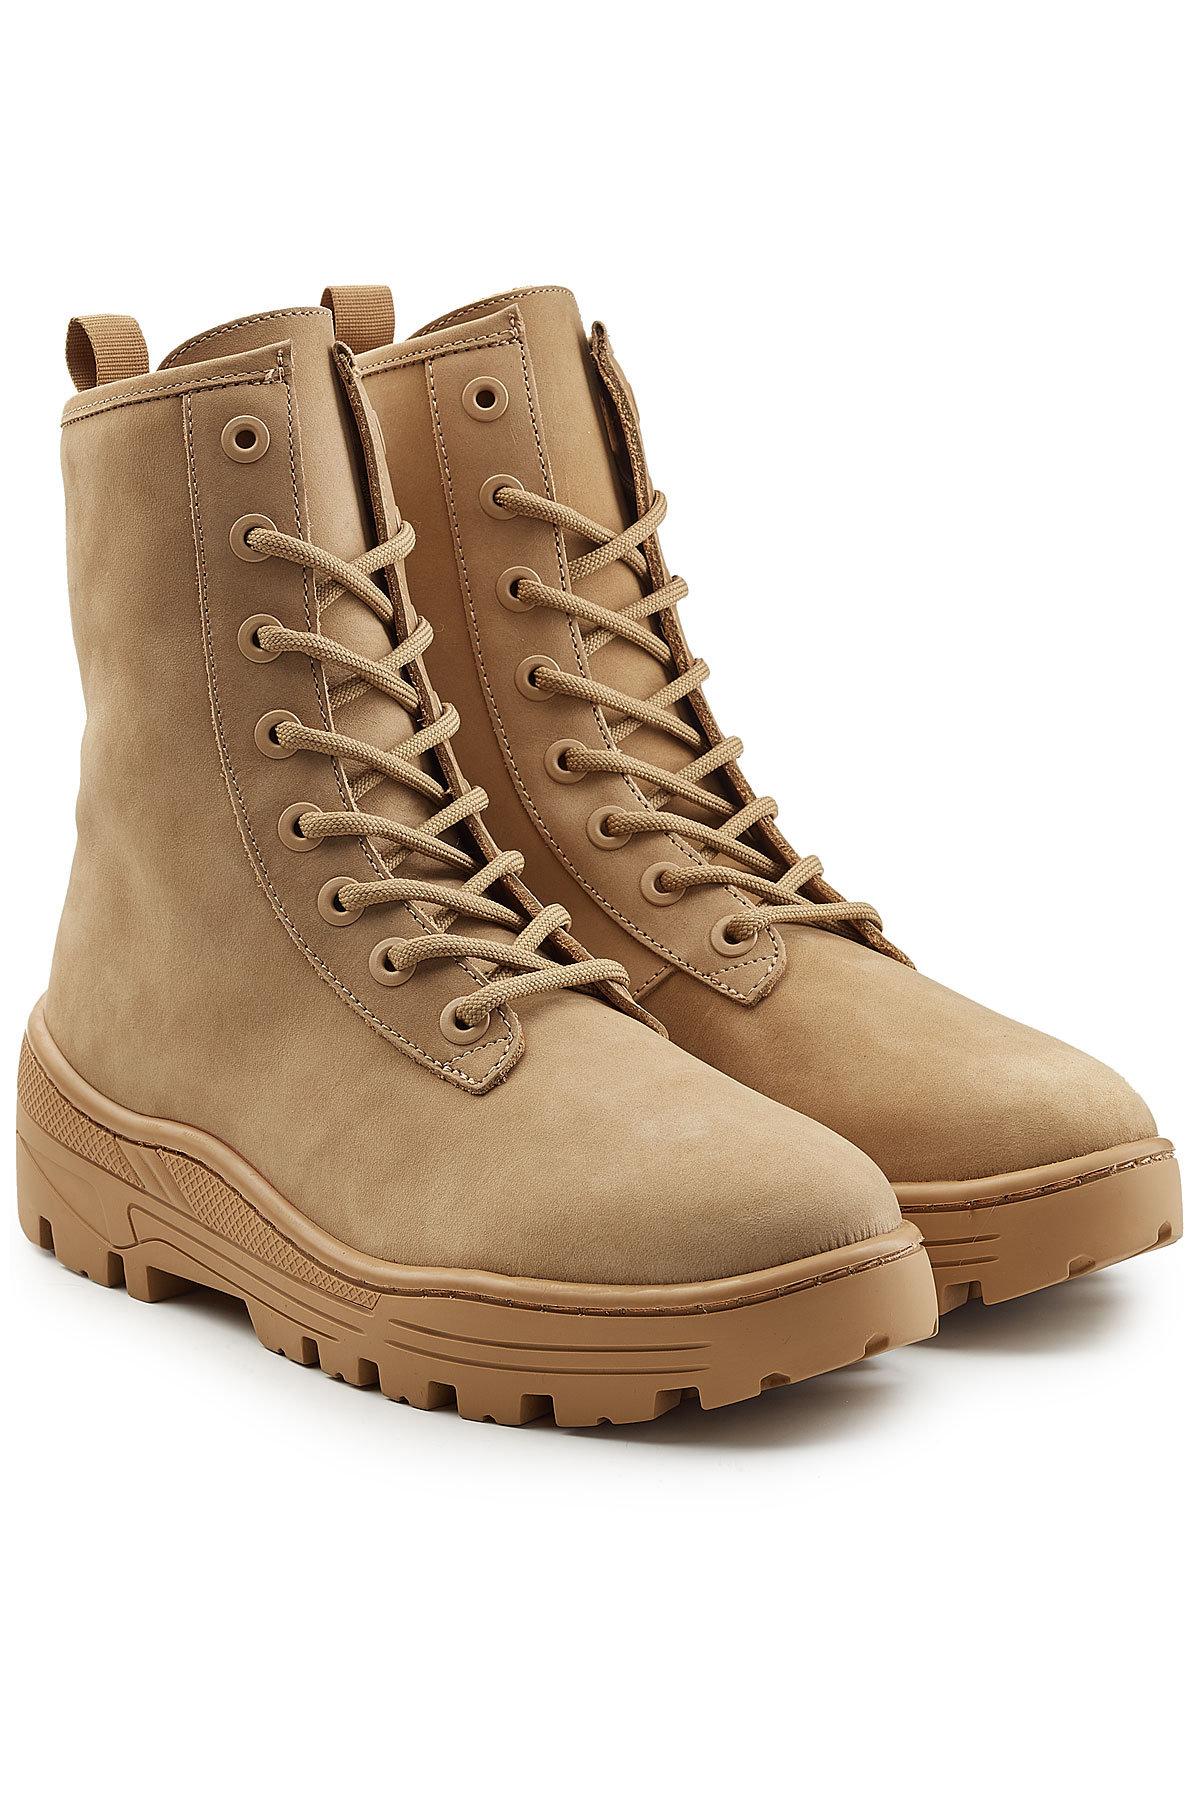 beige yeezy boots